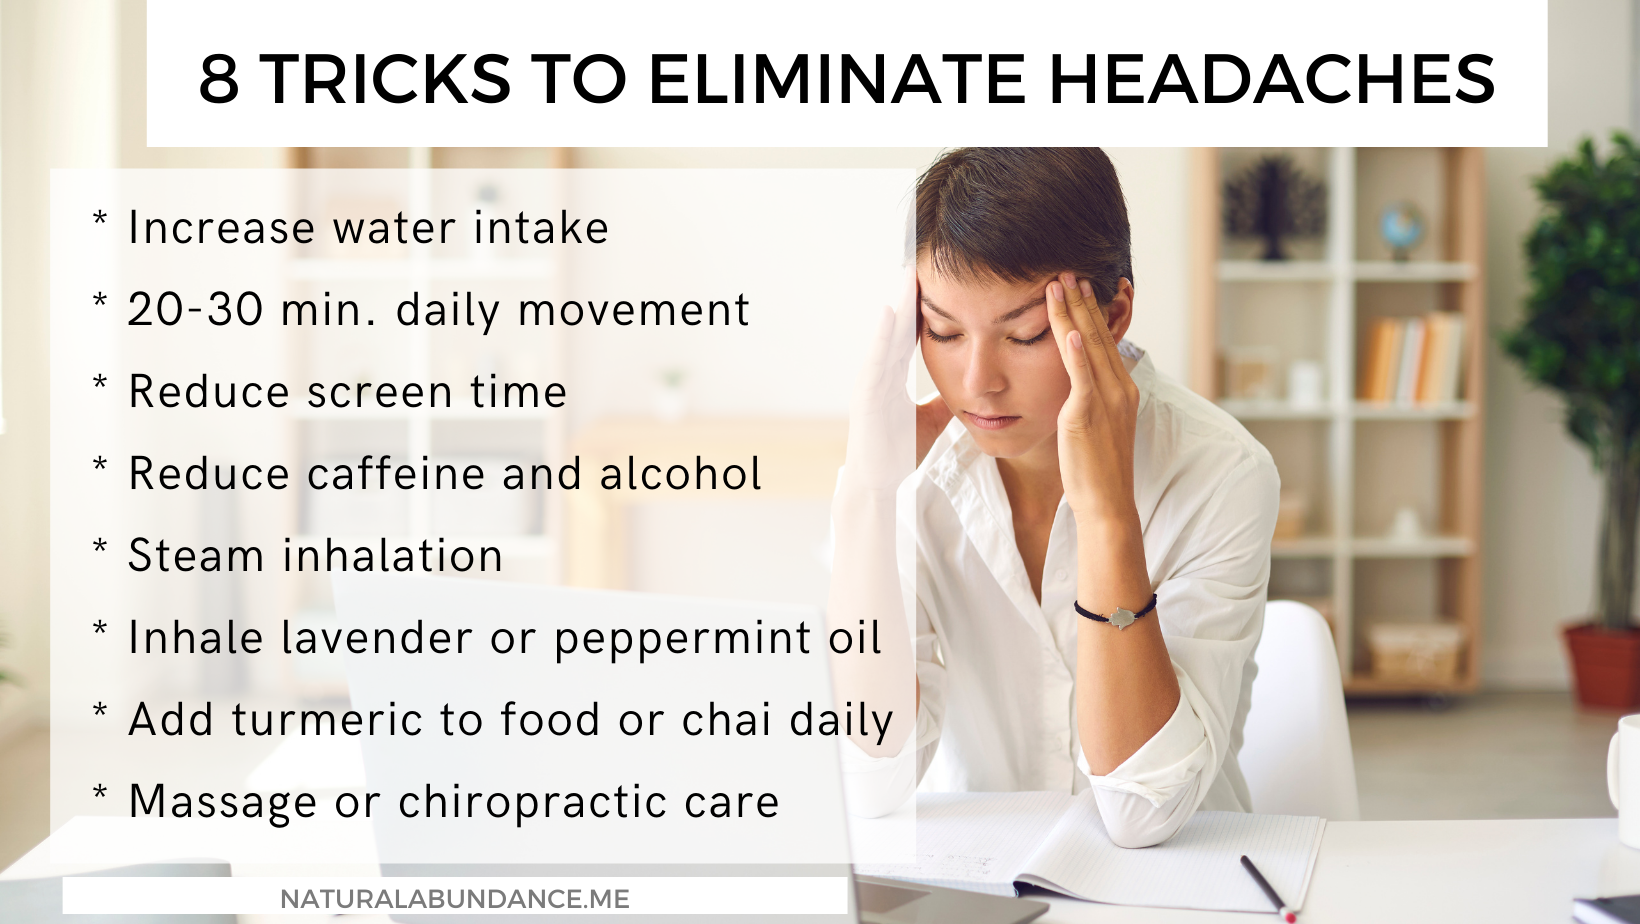 8 tricks for headaches